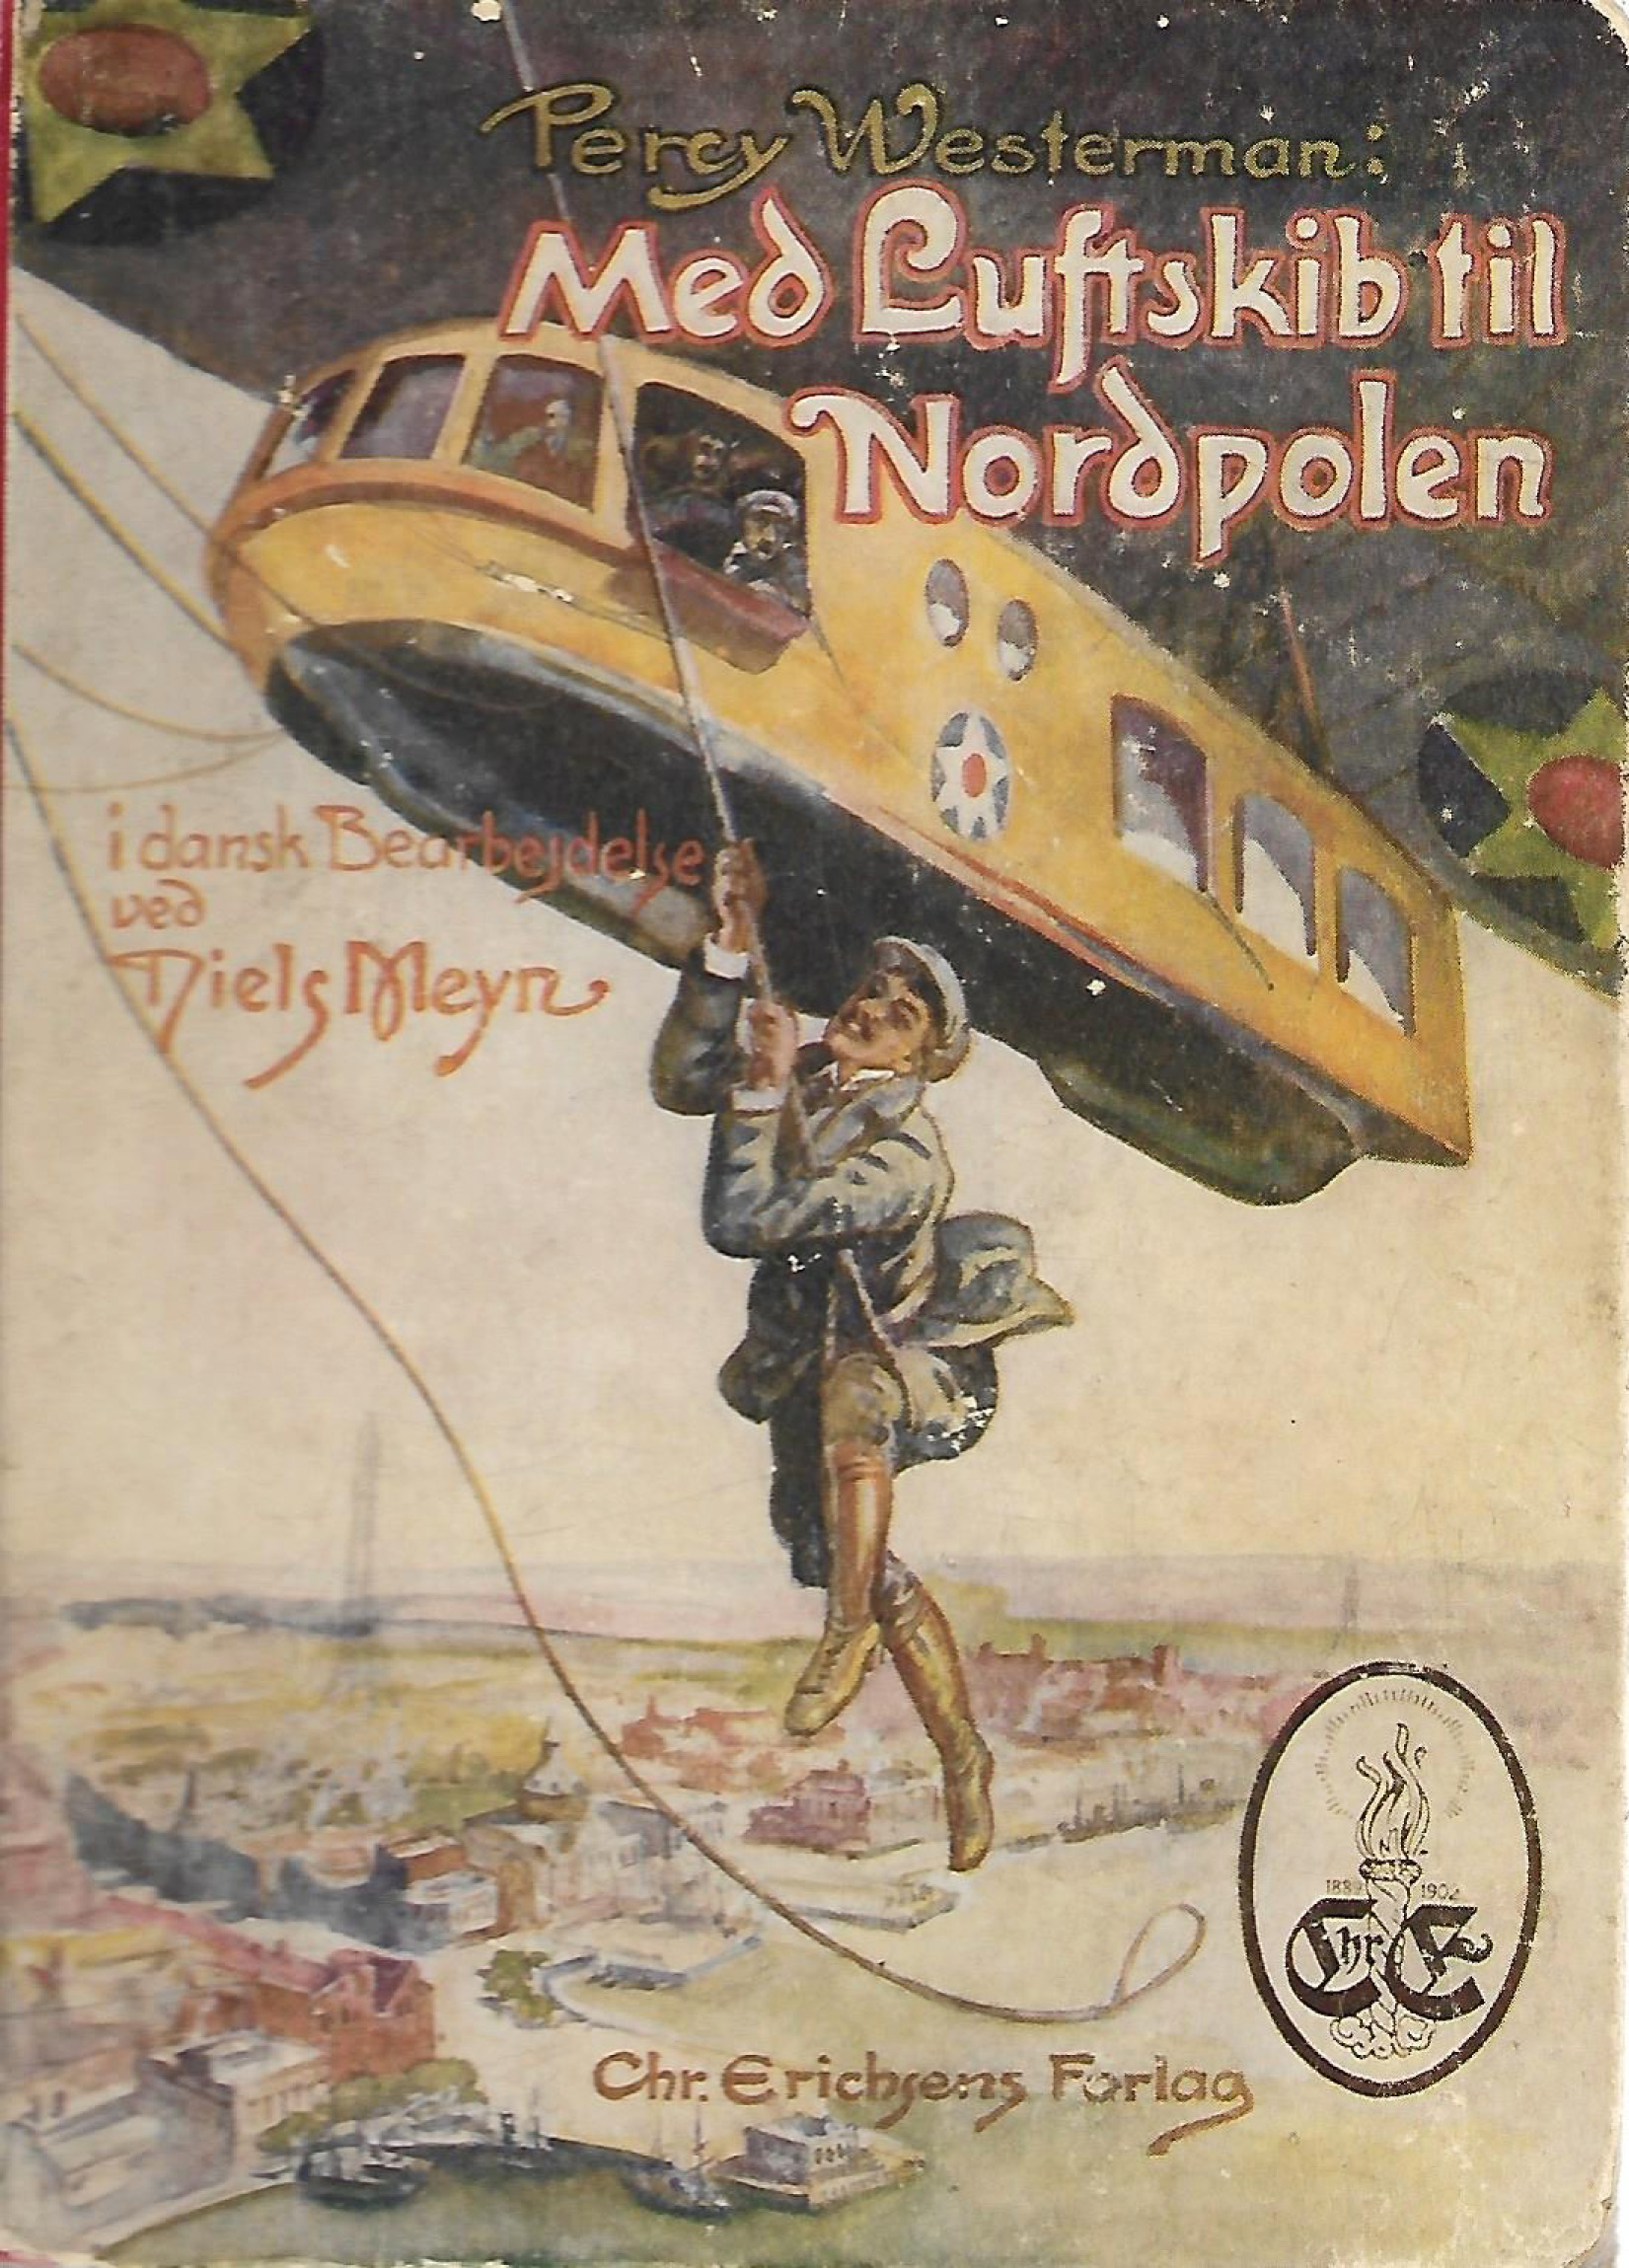 Med luftskib til Nordpolen - Percy Westerman 1925-1